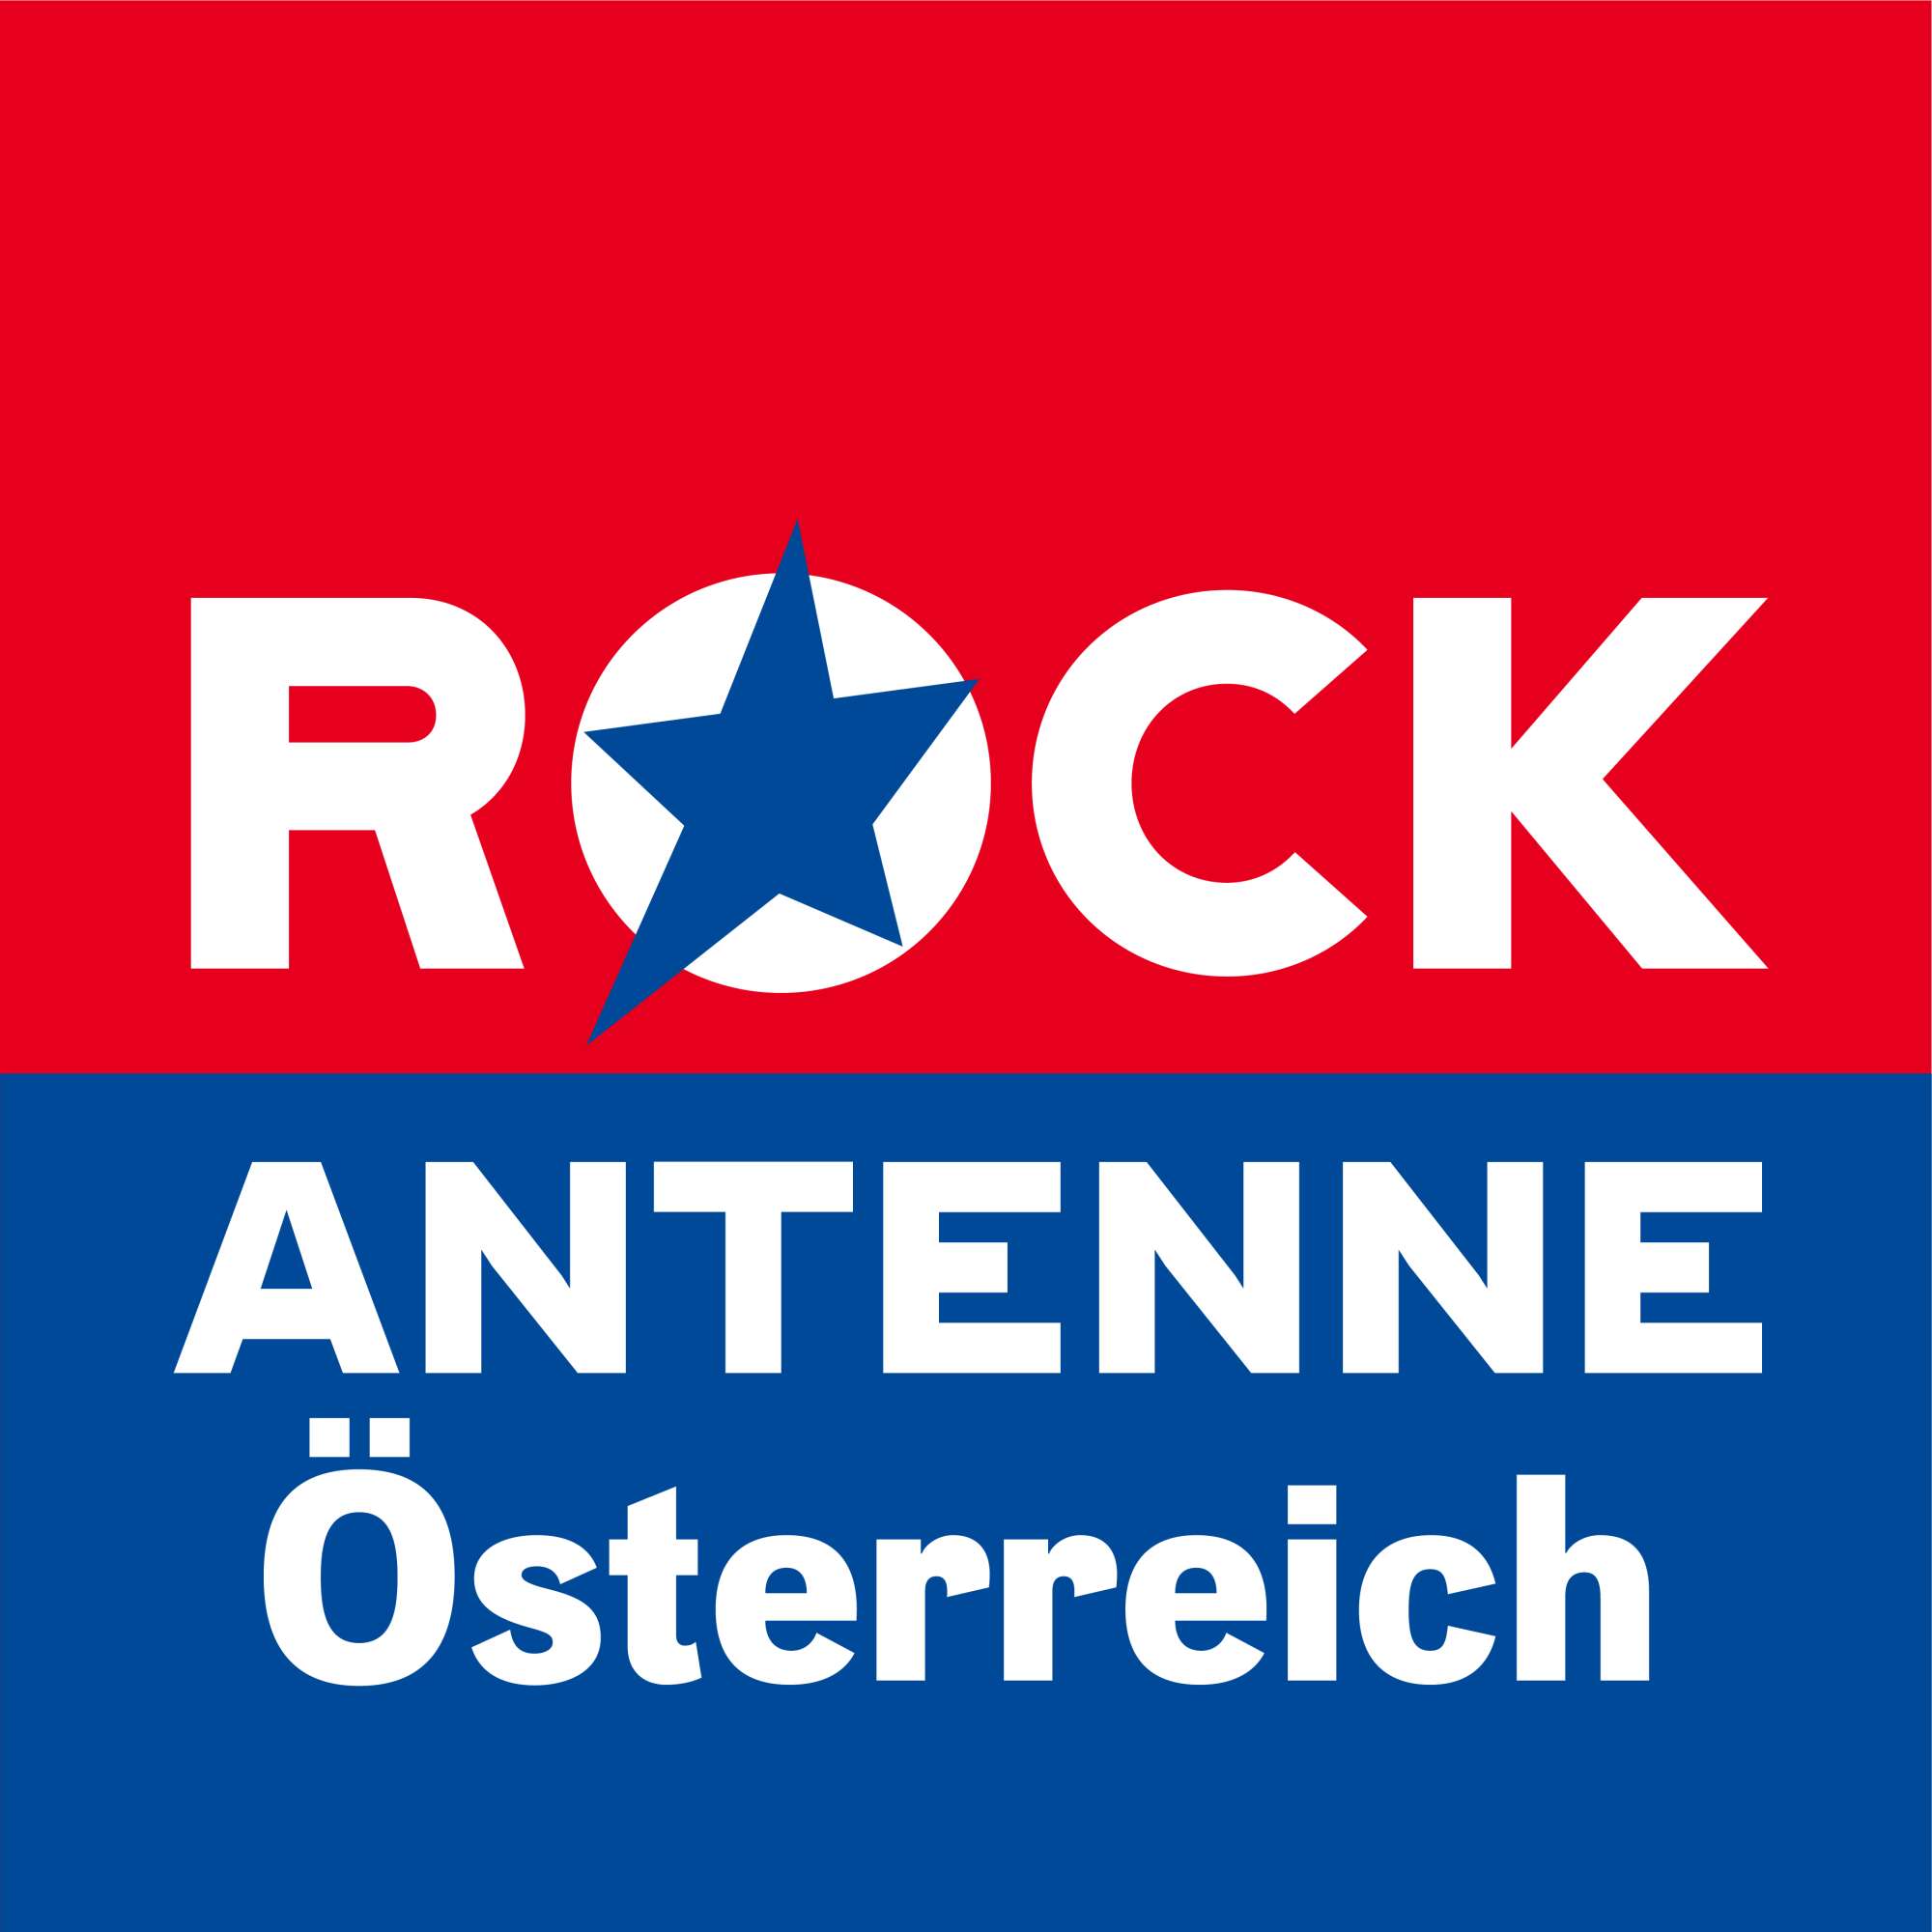 ROCK ANTENNE Österreich Logo